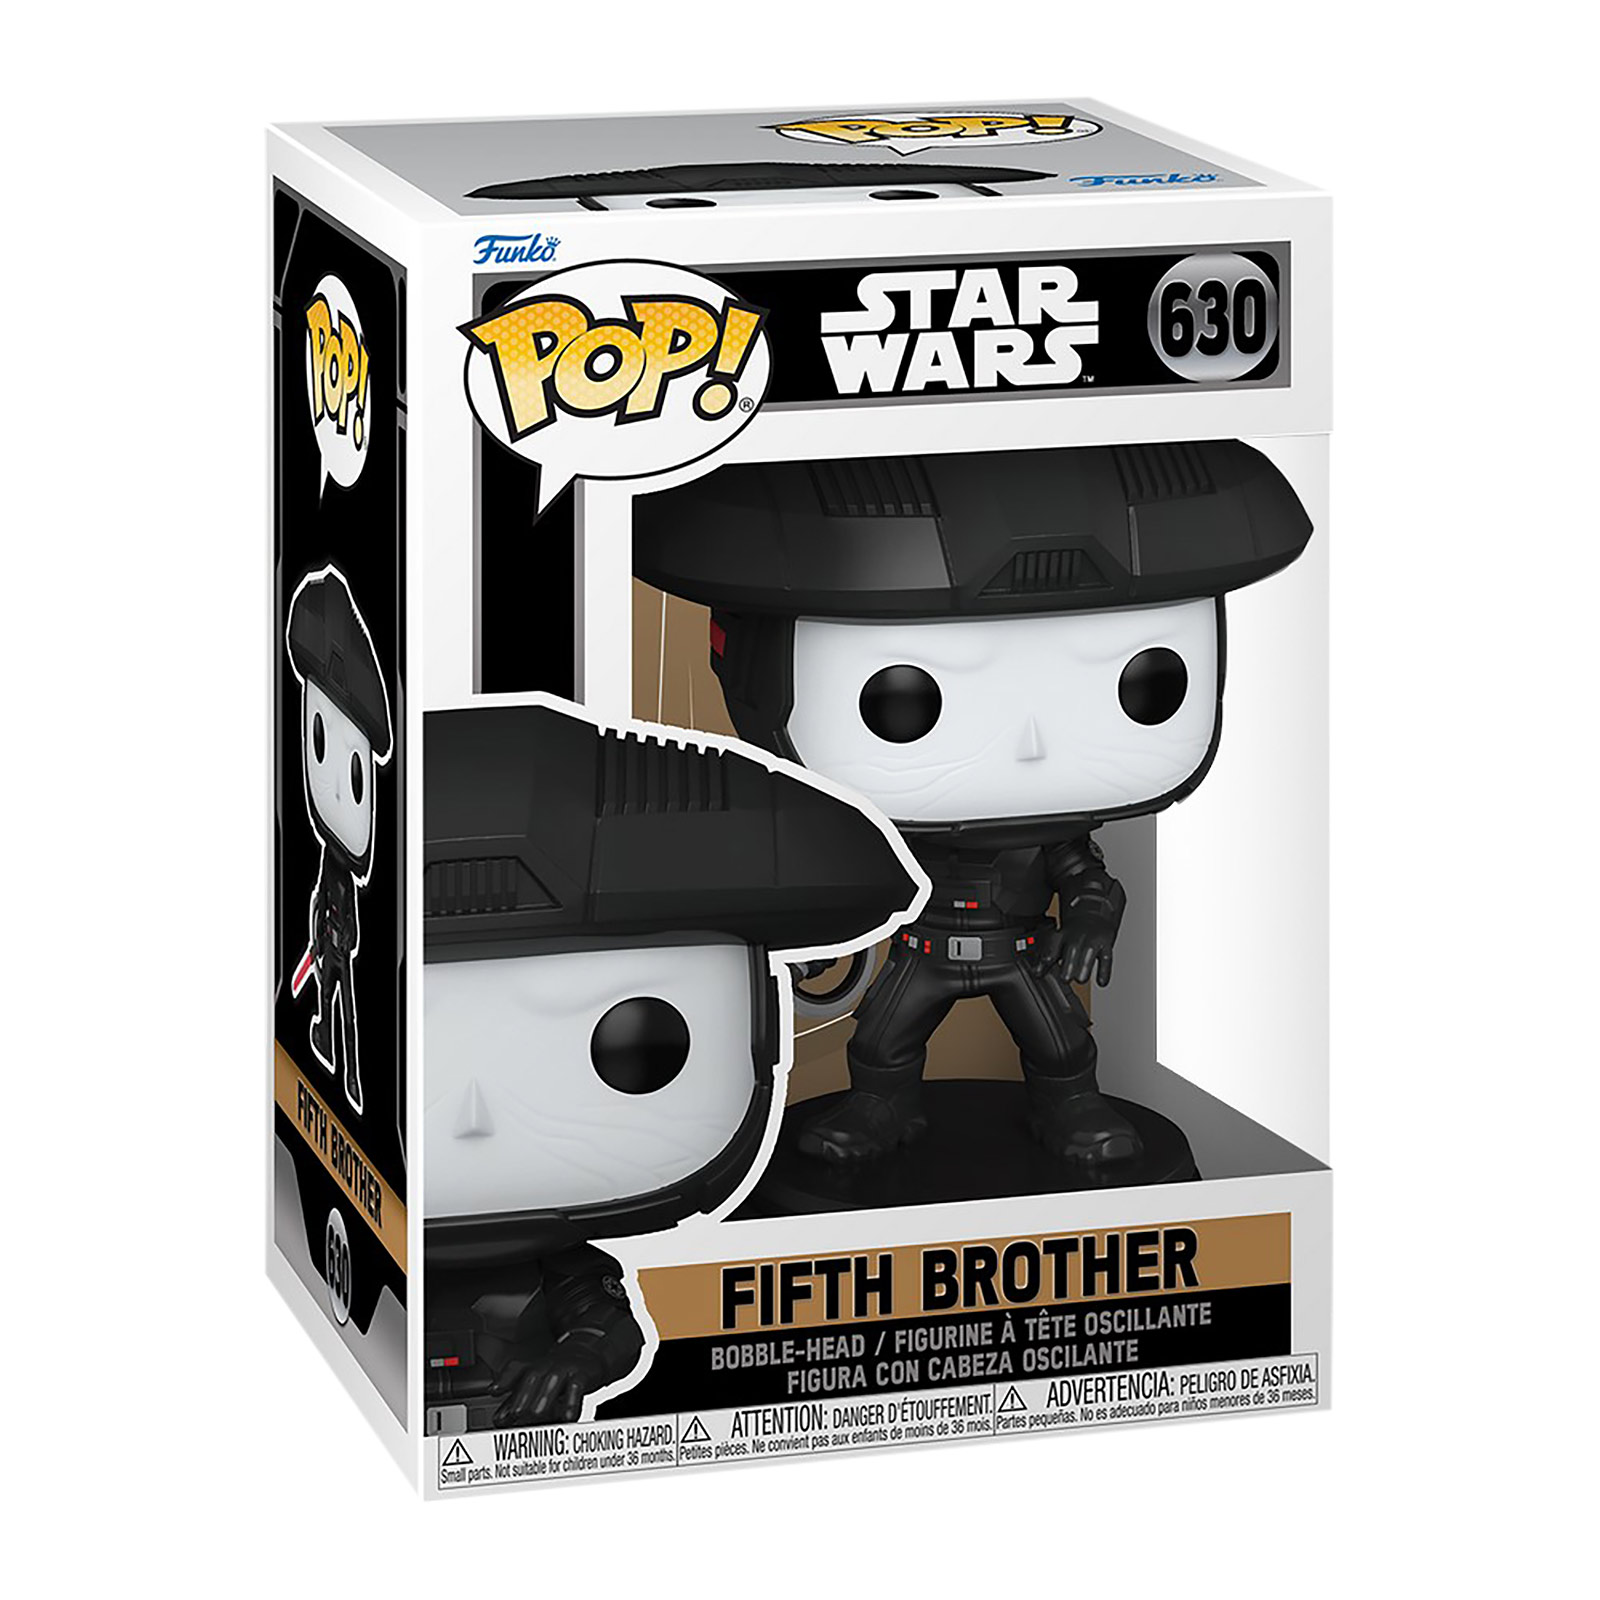 Star Wars Obi-Wan Kenobi - Fifth Brother Funko Pop Bobblehead Figure